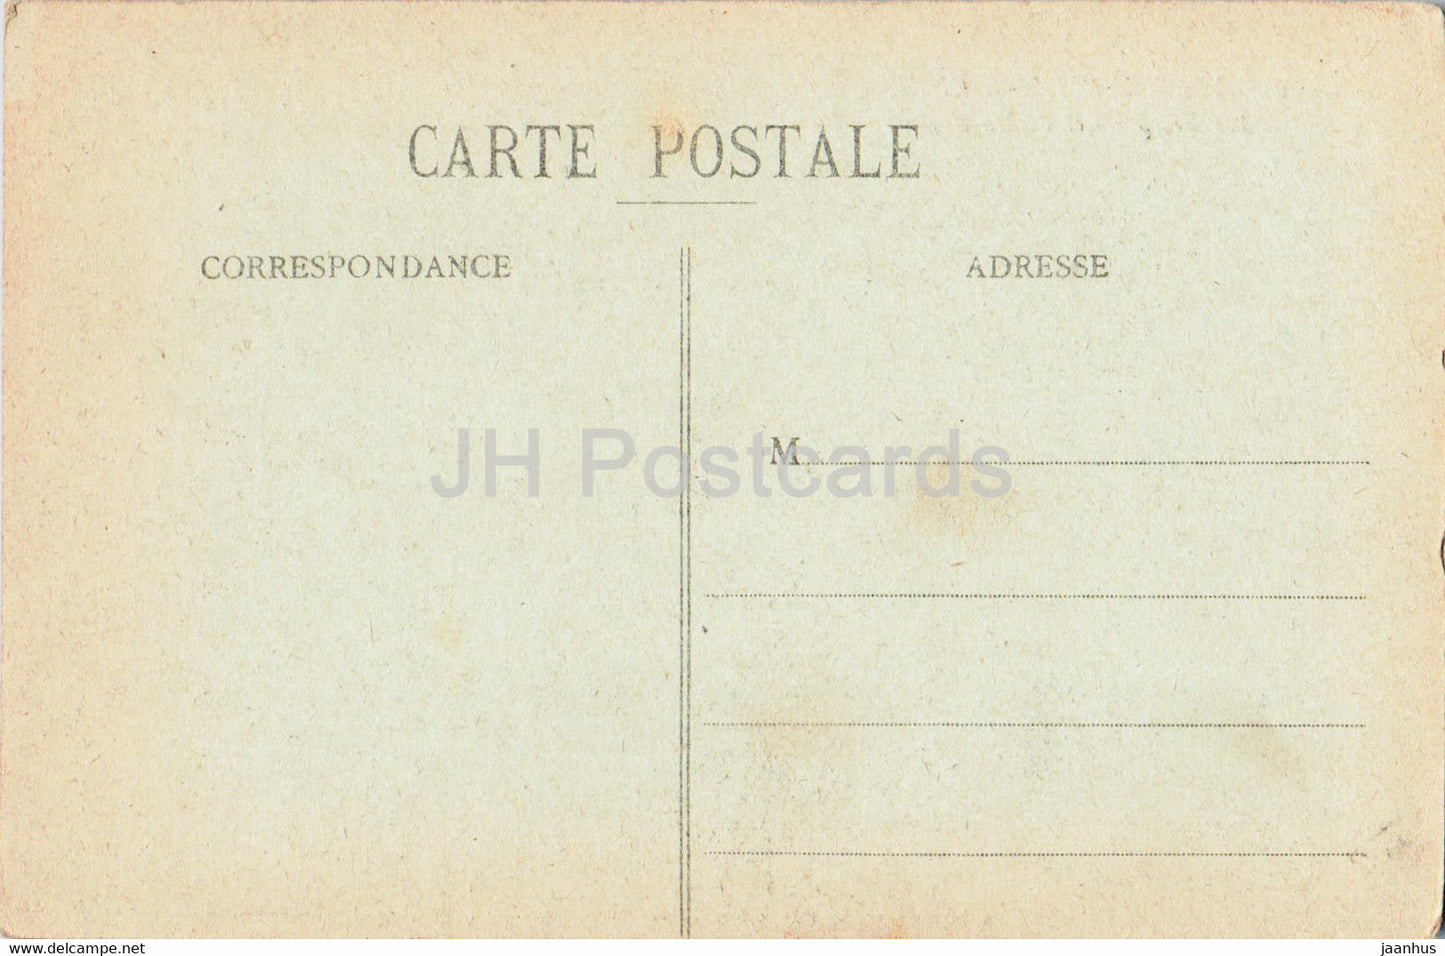 Mont St Michel - Les Remparts et l'Abbaye - 115 - old postcard - France - unused